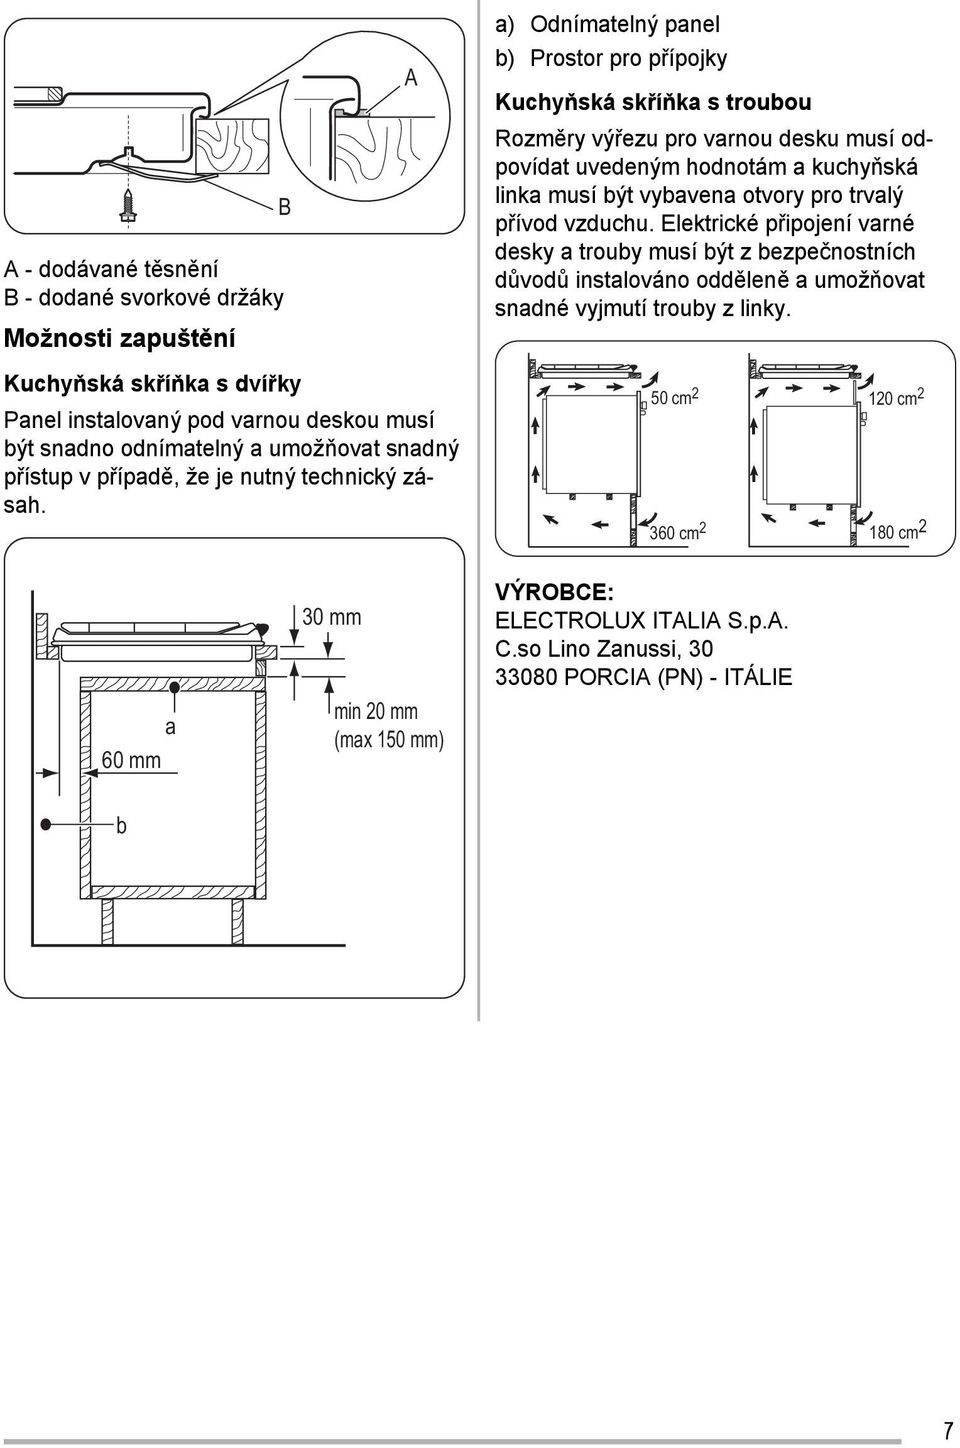 A a) Odnímatelný panel b) Prostor pro přípojky Kuchyňská skříňka s troubou Rozměry výřezu pro varnou desku musí odpovídat uvedeným hodnotám a kuchyňská linka musí být vybavena otvory